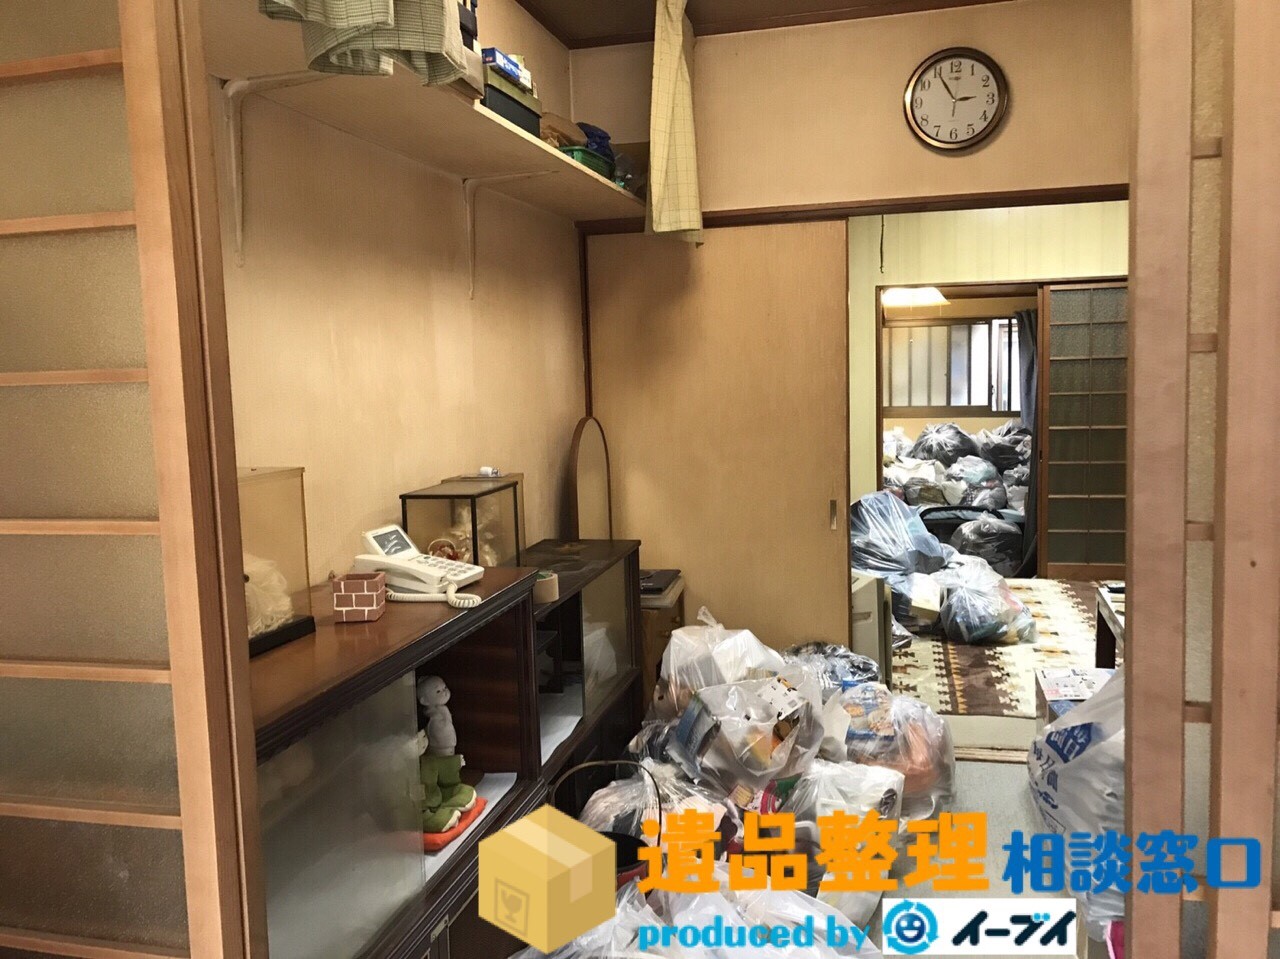 奈良県奈良市で遺品整理作業に伴い遺品や生活用品を処分しました。のアイキャッチ